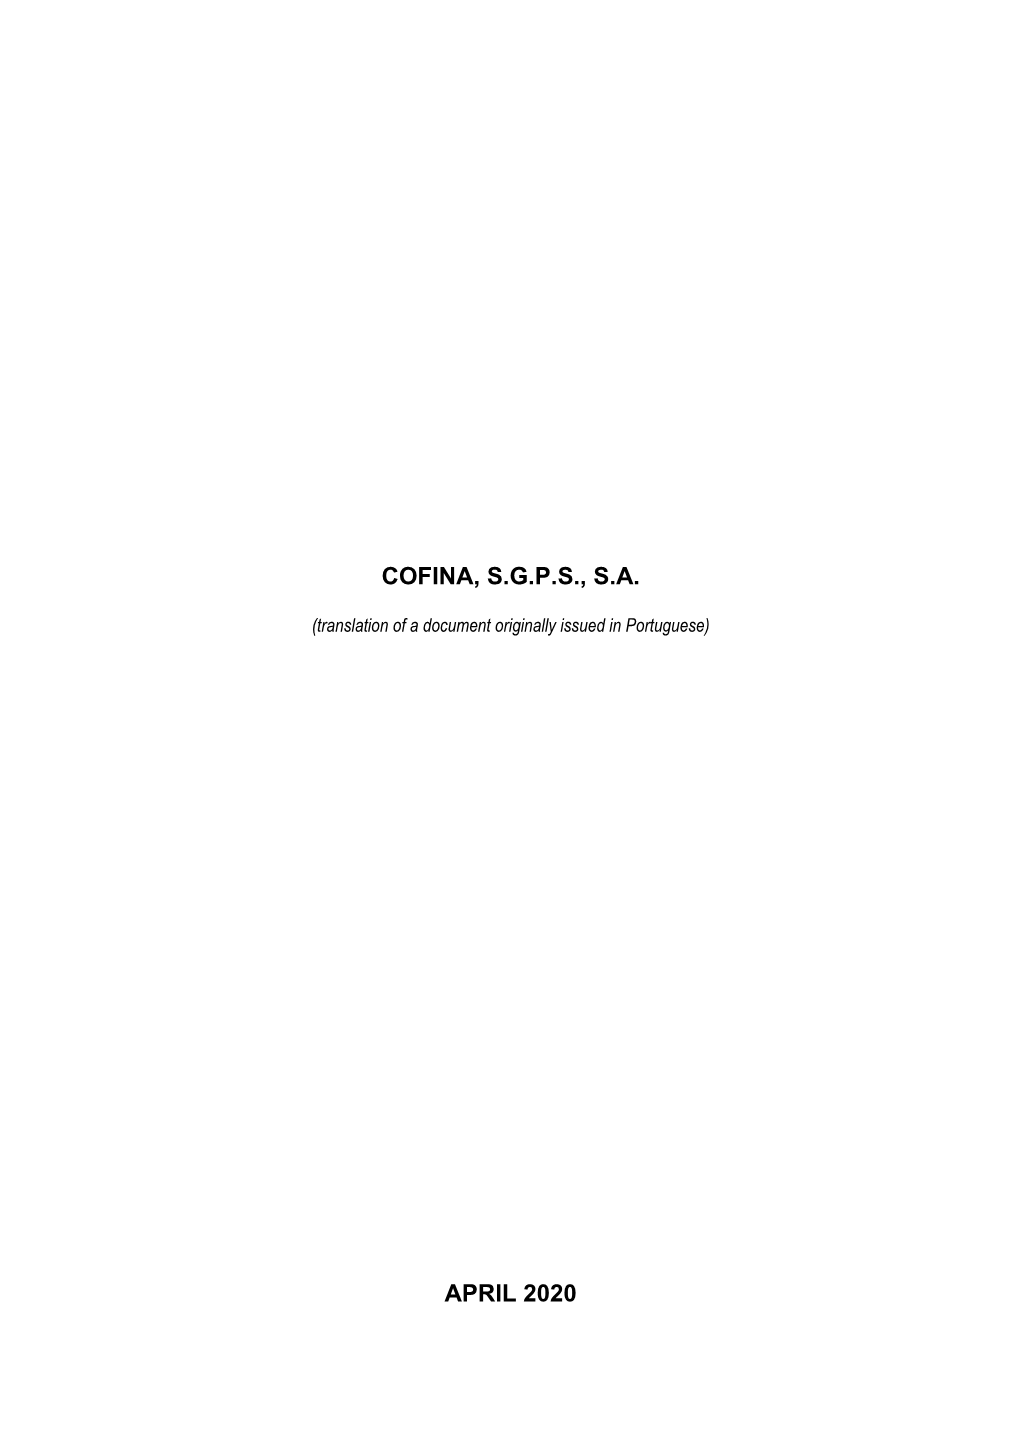 Cofina, S.G.P.S., S.A. April 2020